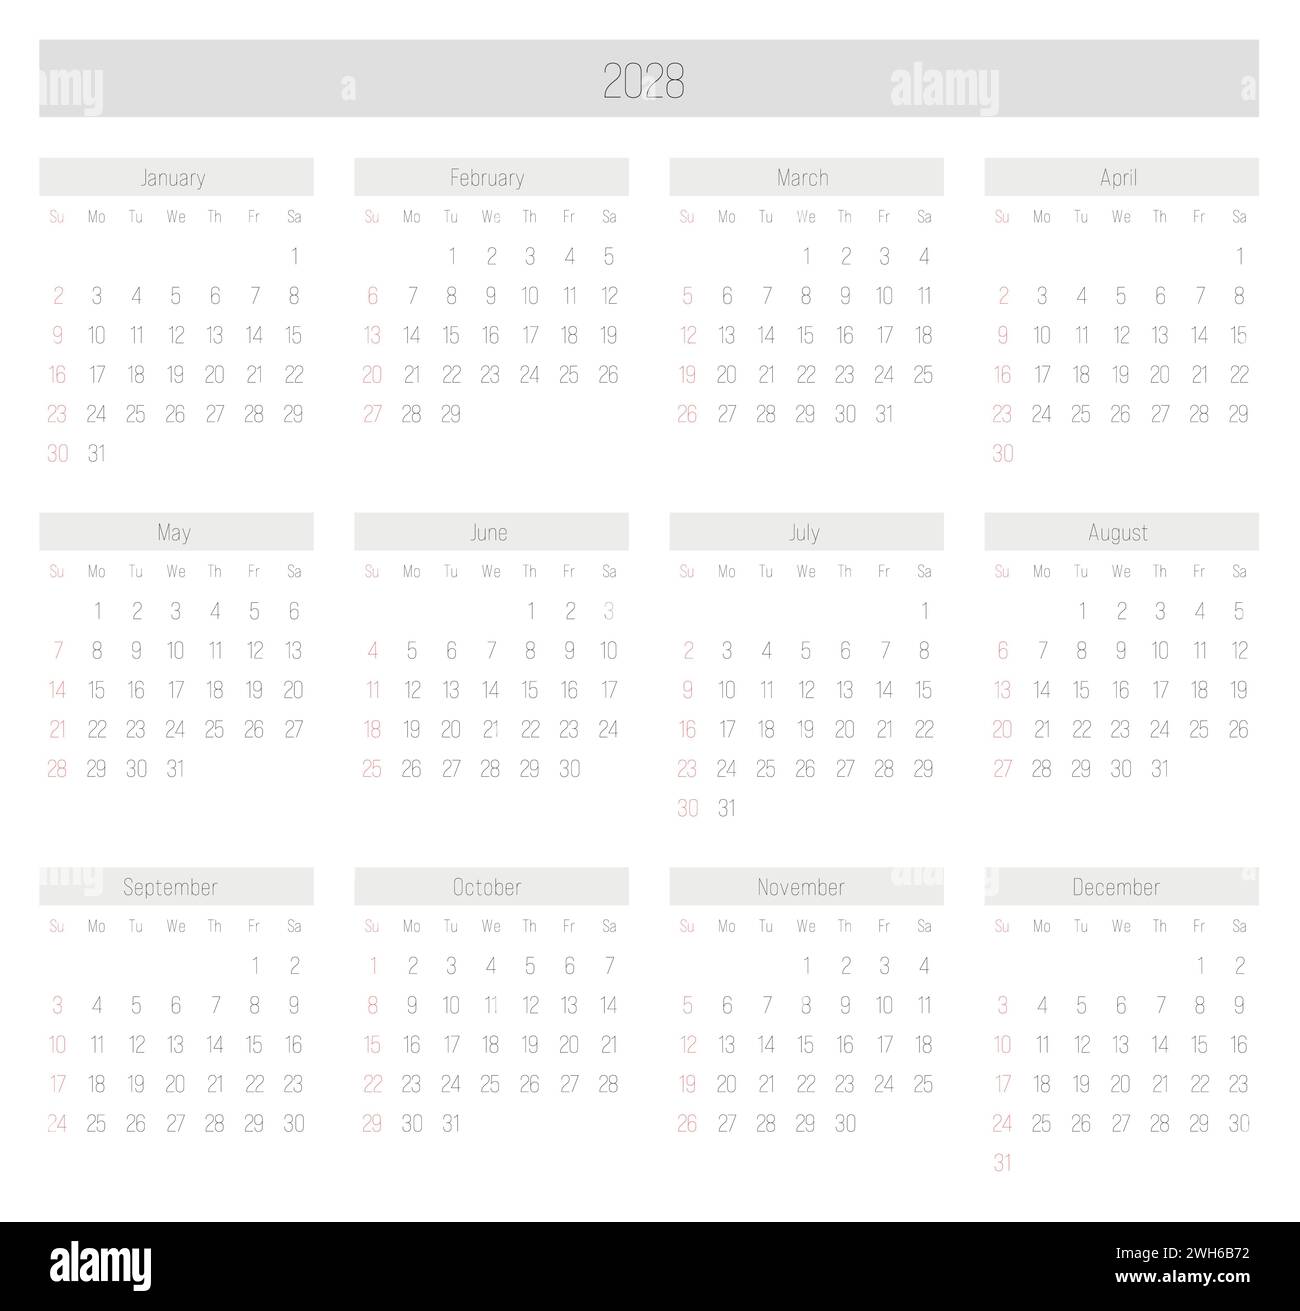 Calendario mensile dell'anno 2028. La settimana inizia la domenica. Blocco di mesi in due file e sei colonne disposizione orizzontale. Design minimalista e sottile. Illustrazione vettoriale. Illustrazione Vettoriale